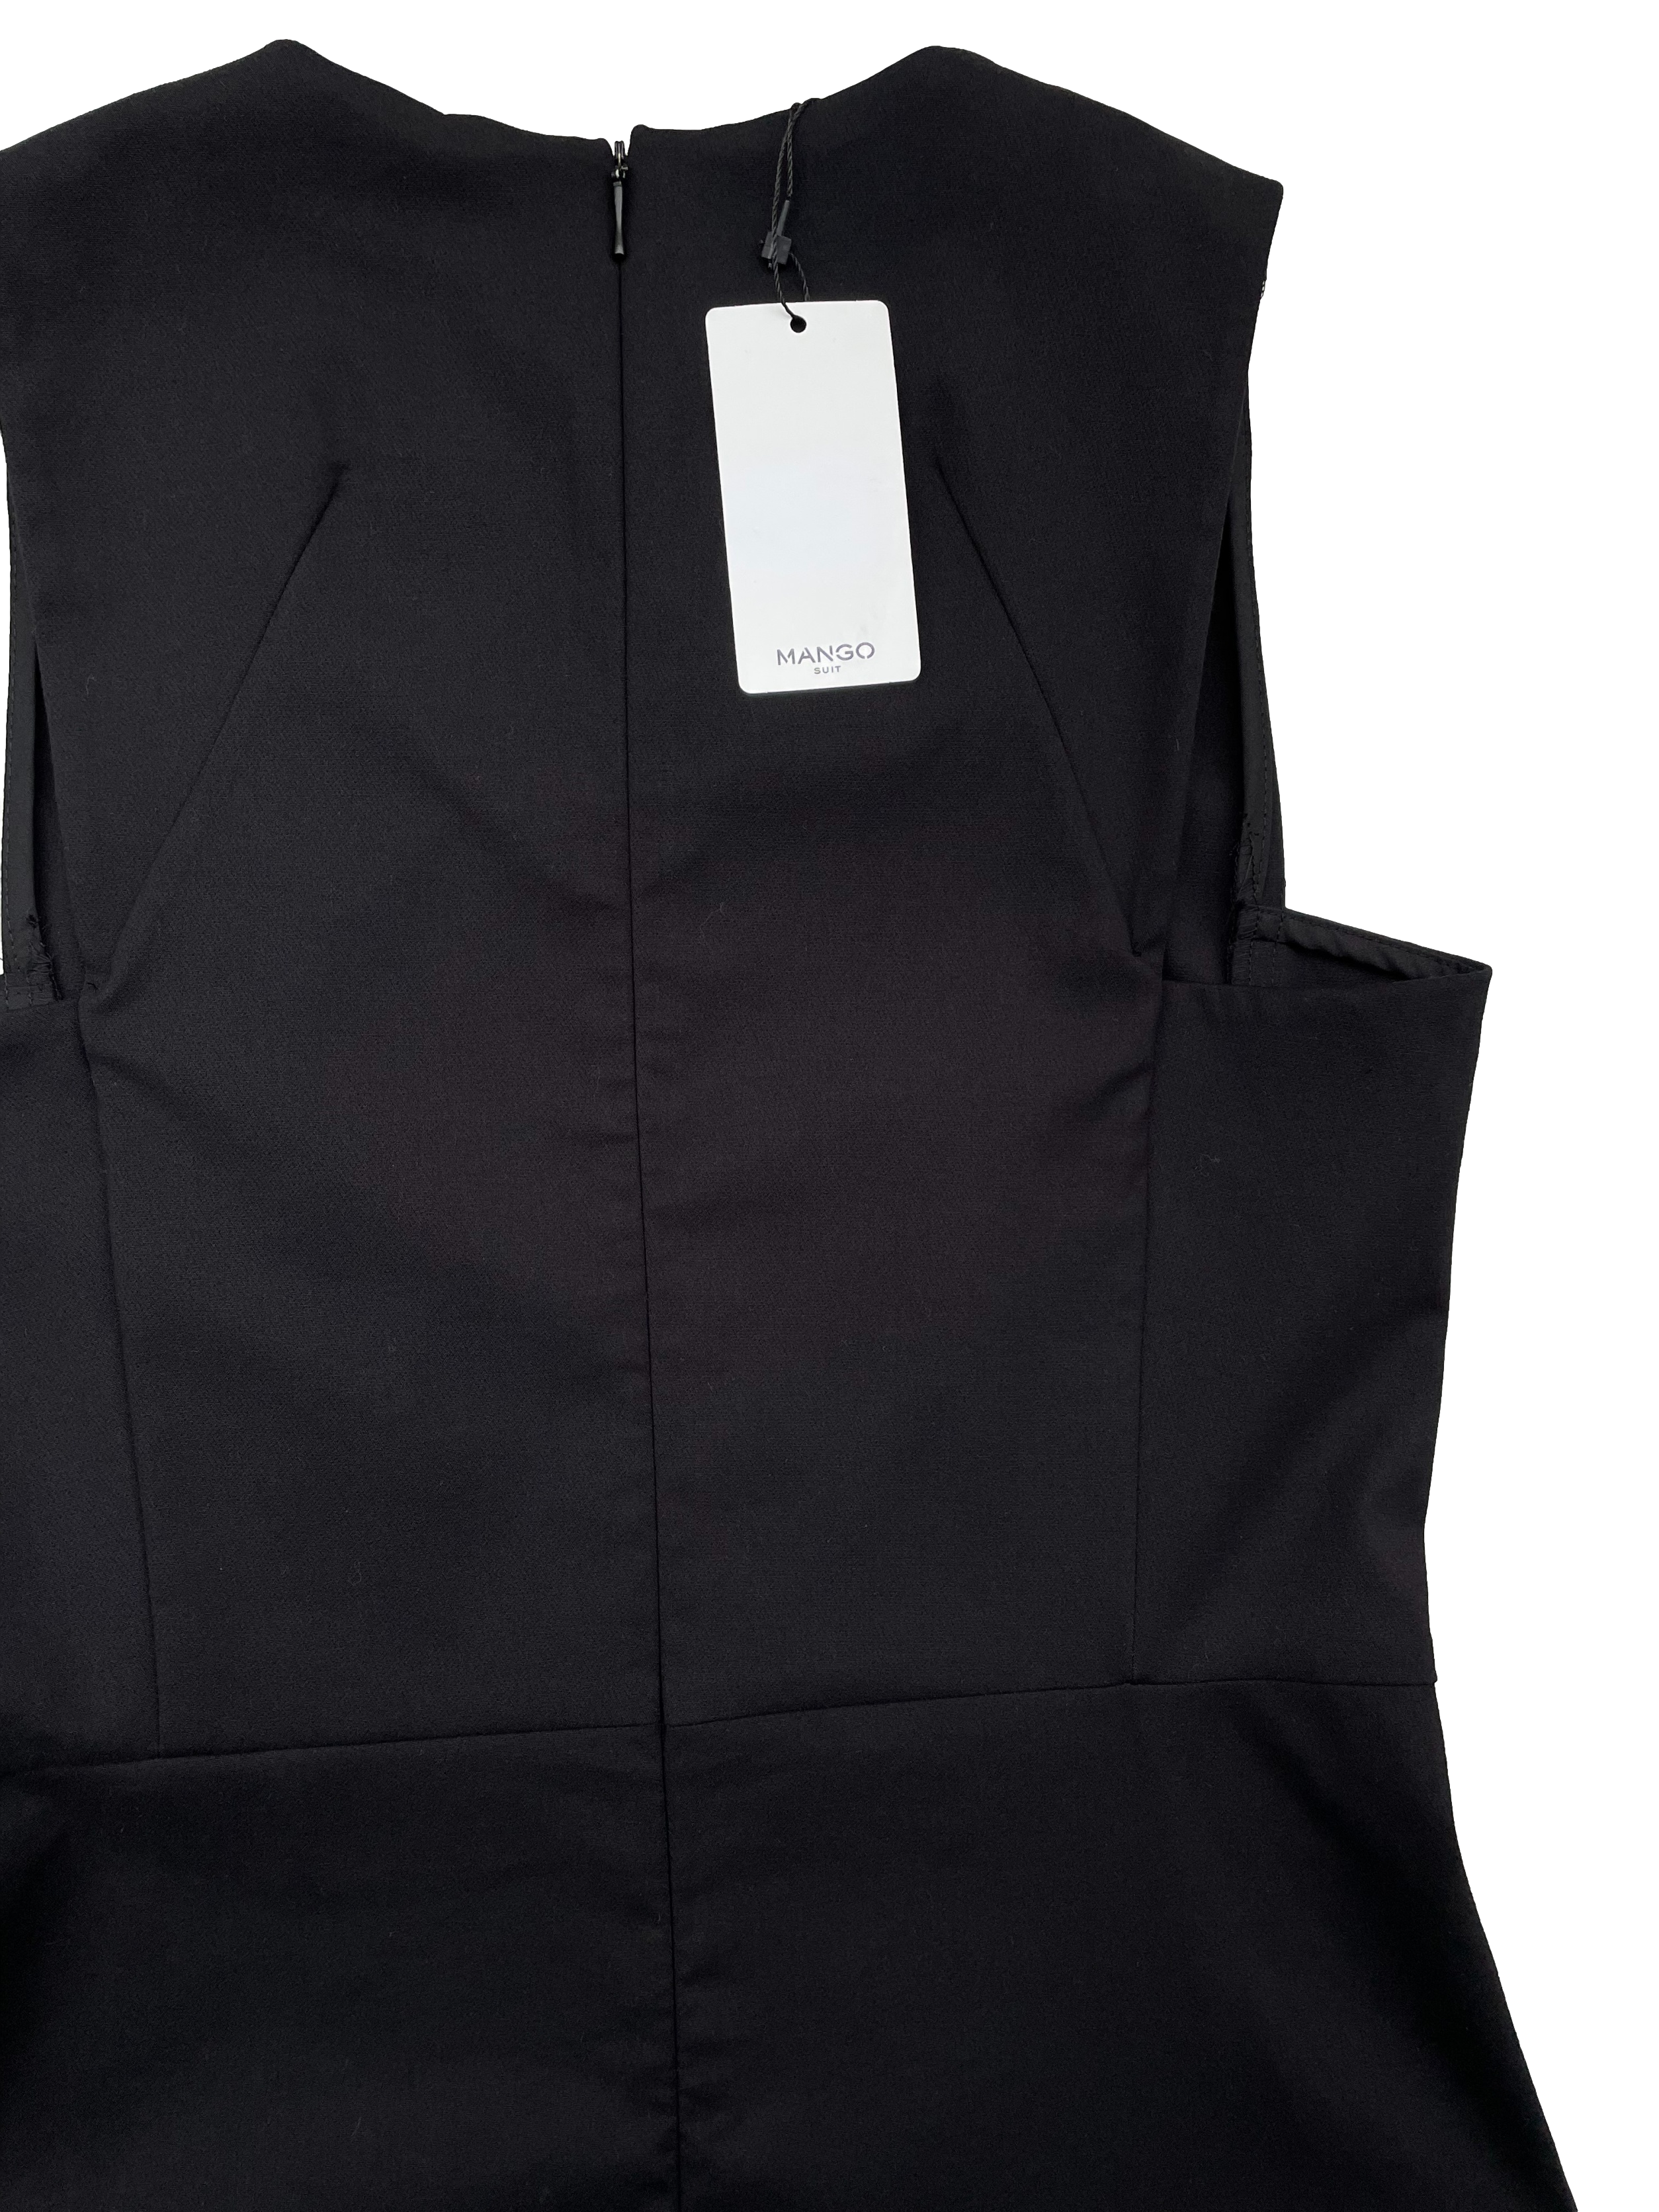 Vestino negro Mango, tela plana, corte en cintura y pinzas en busto, cierre invisible posterior. Nuevo con etiqueta. Busto 88cm, Largo 86cm.